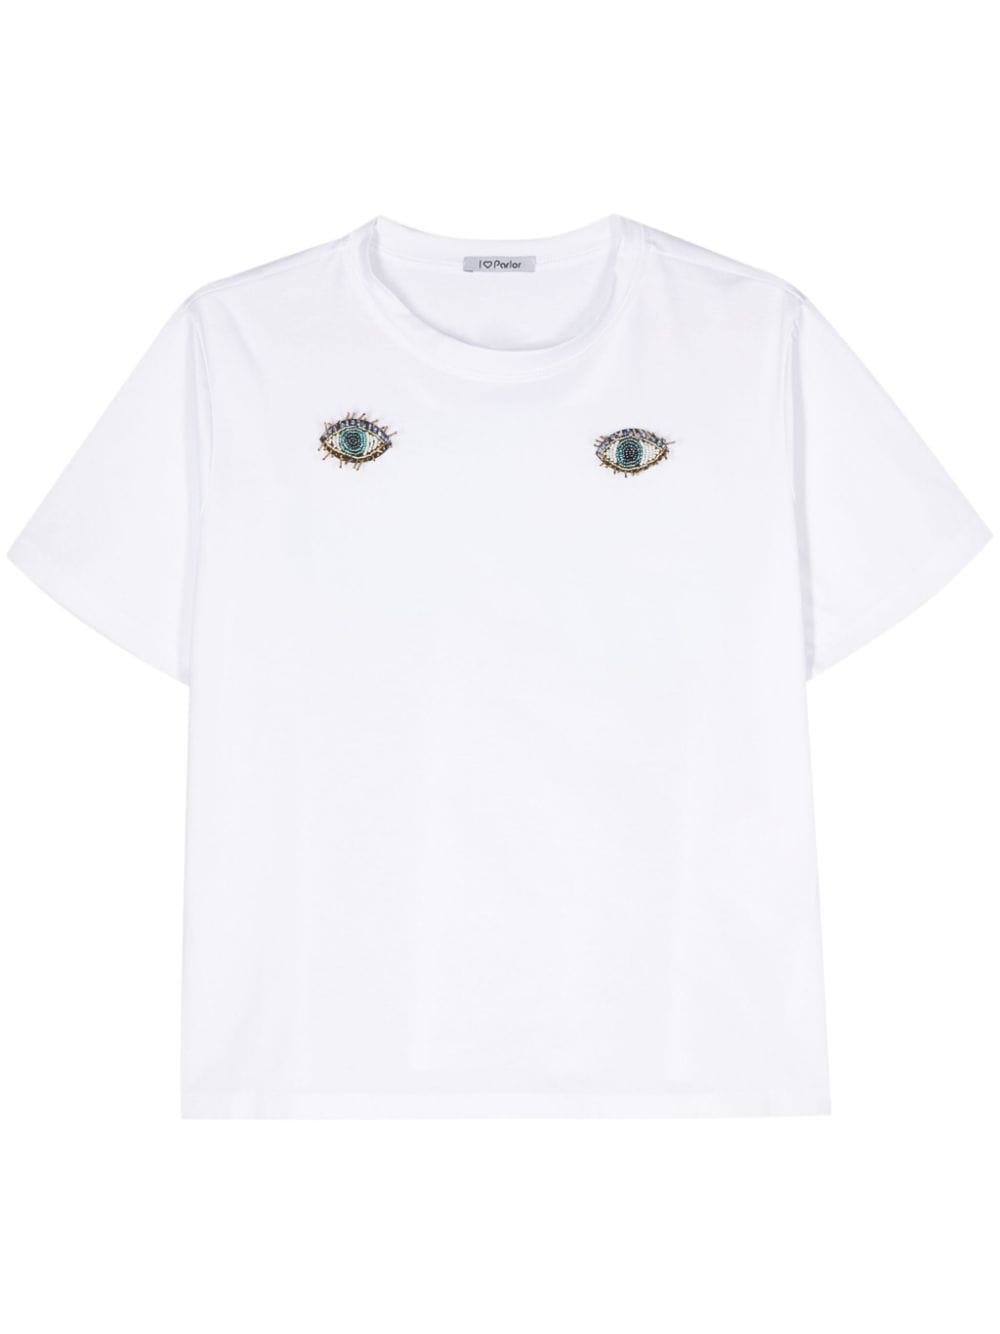 eye-patch cotton T-shirt